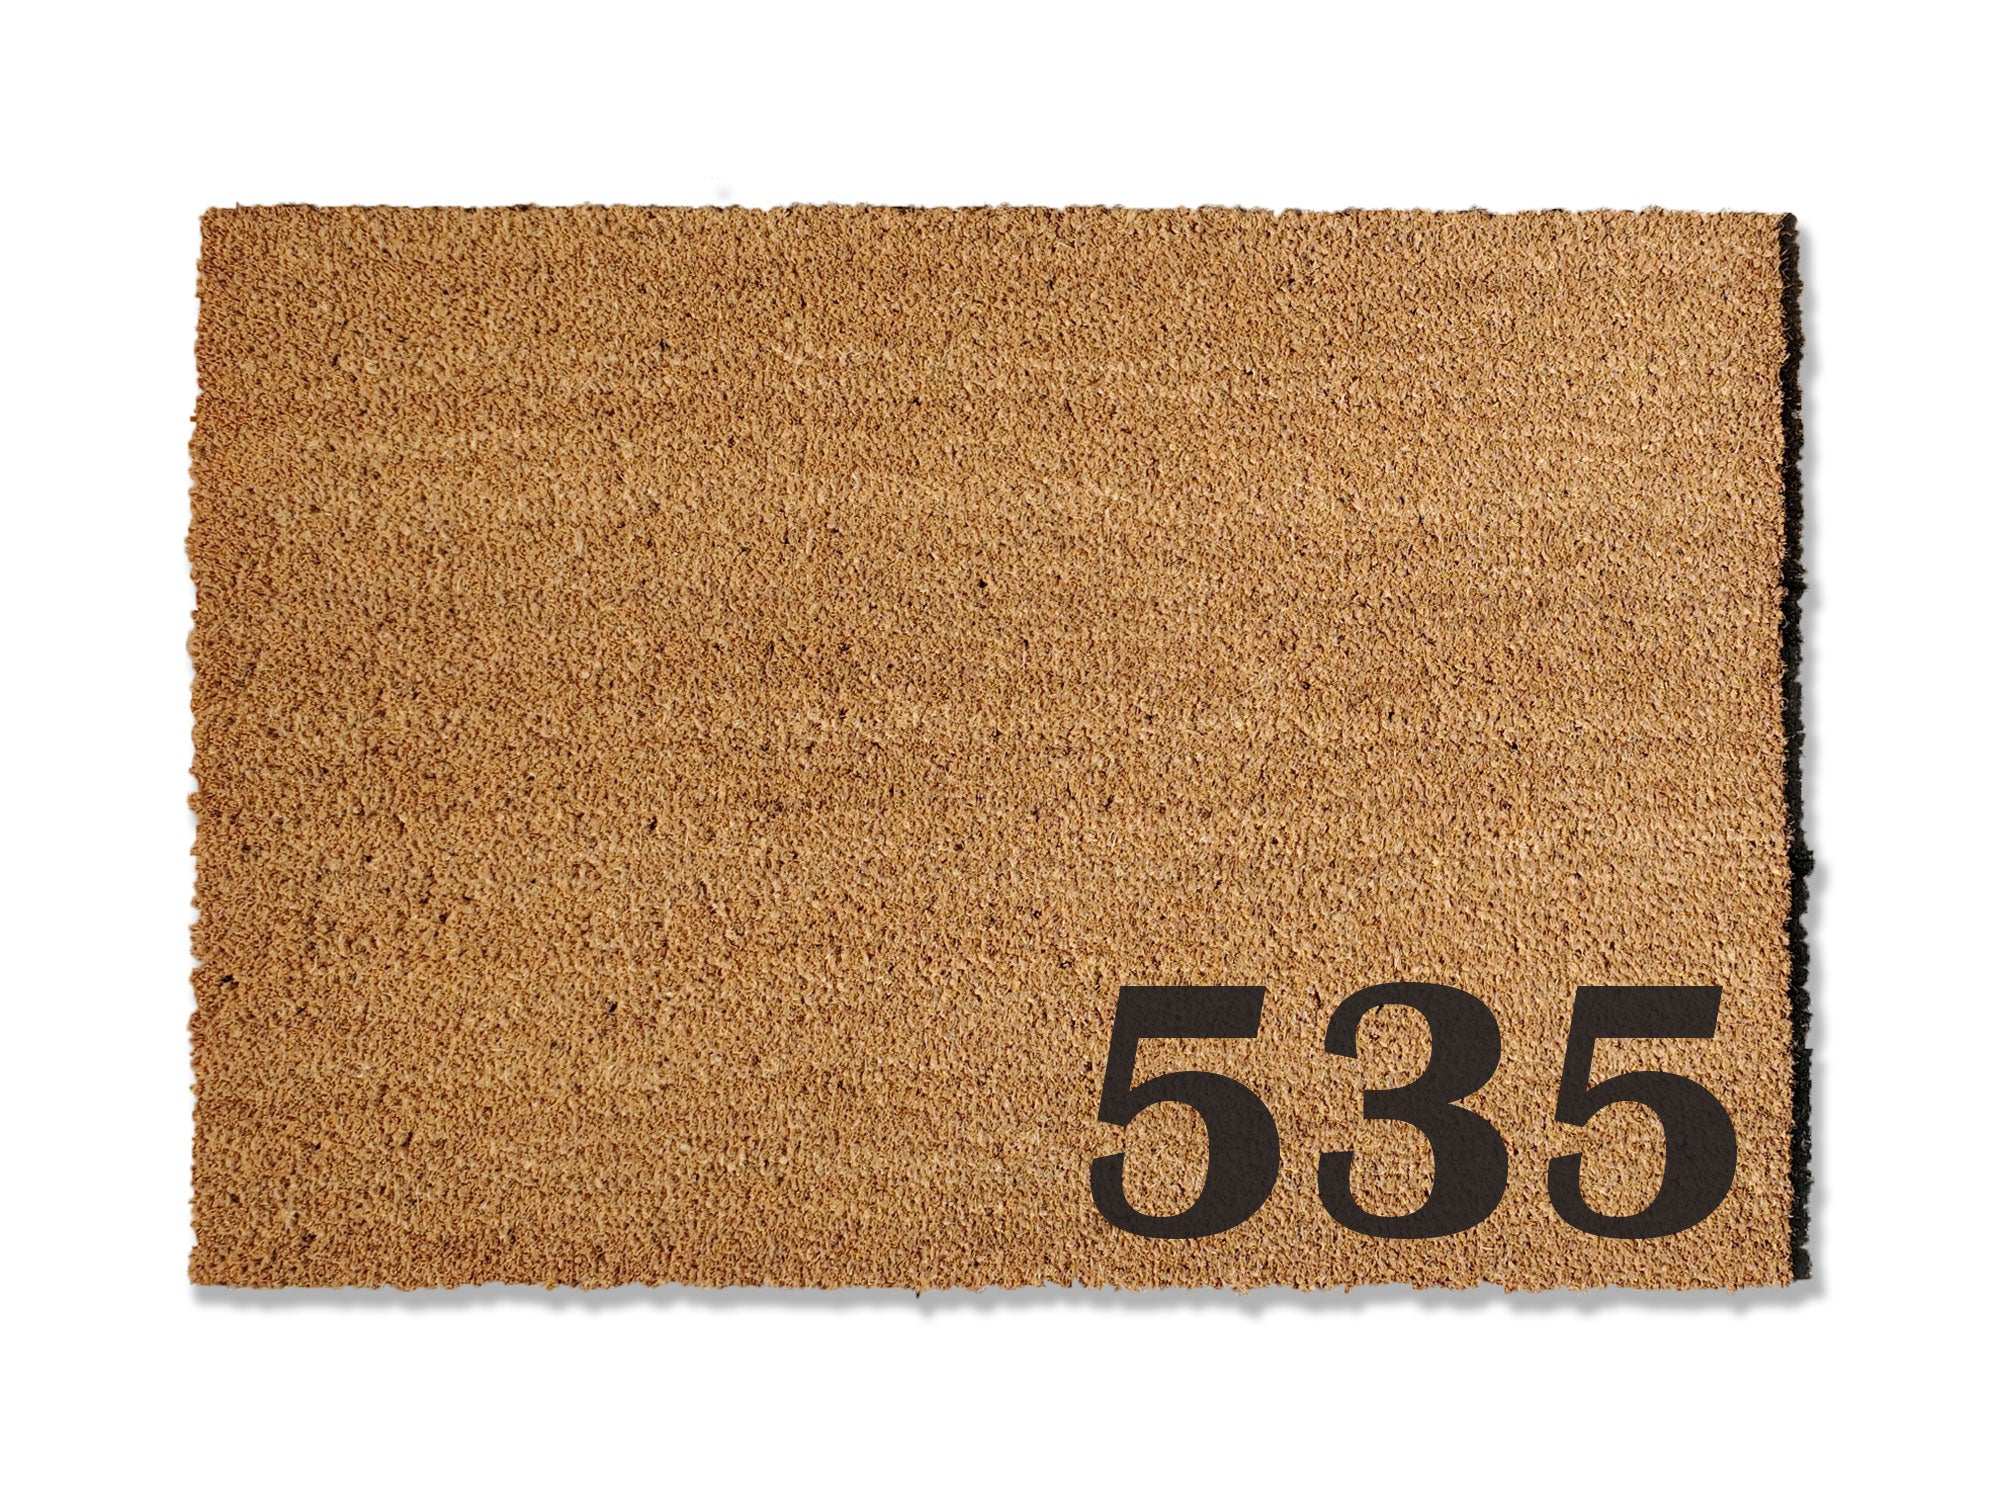 Doormat with House Numbers – UncommonDoormats